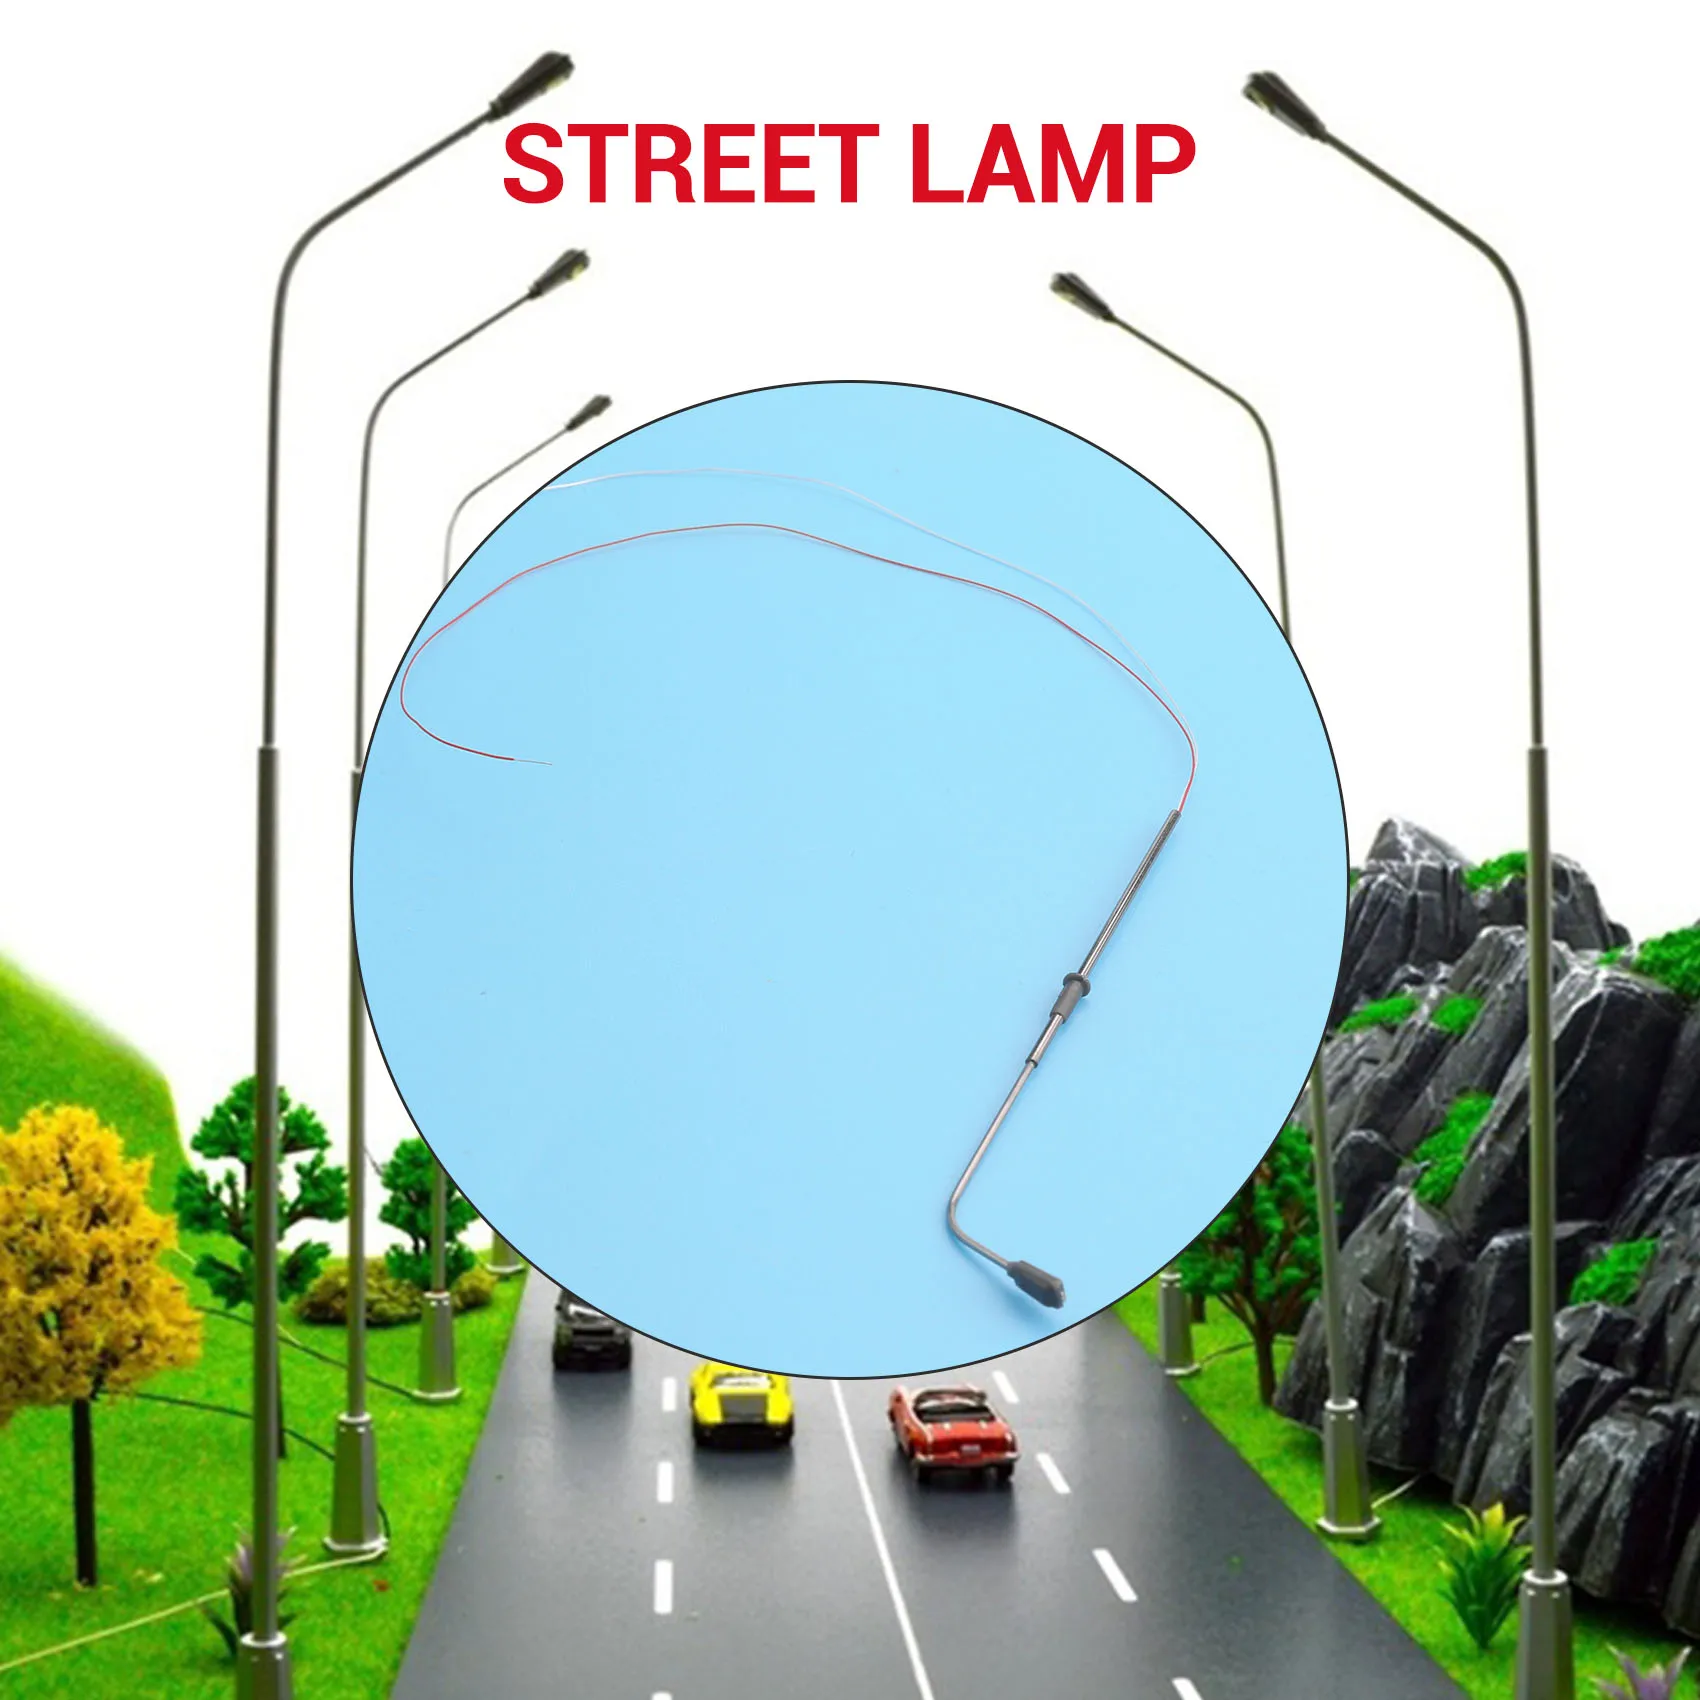 10 adet yükseklik 8 cm model sokak lambası aydınlatma tek model demiryolu manzara